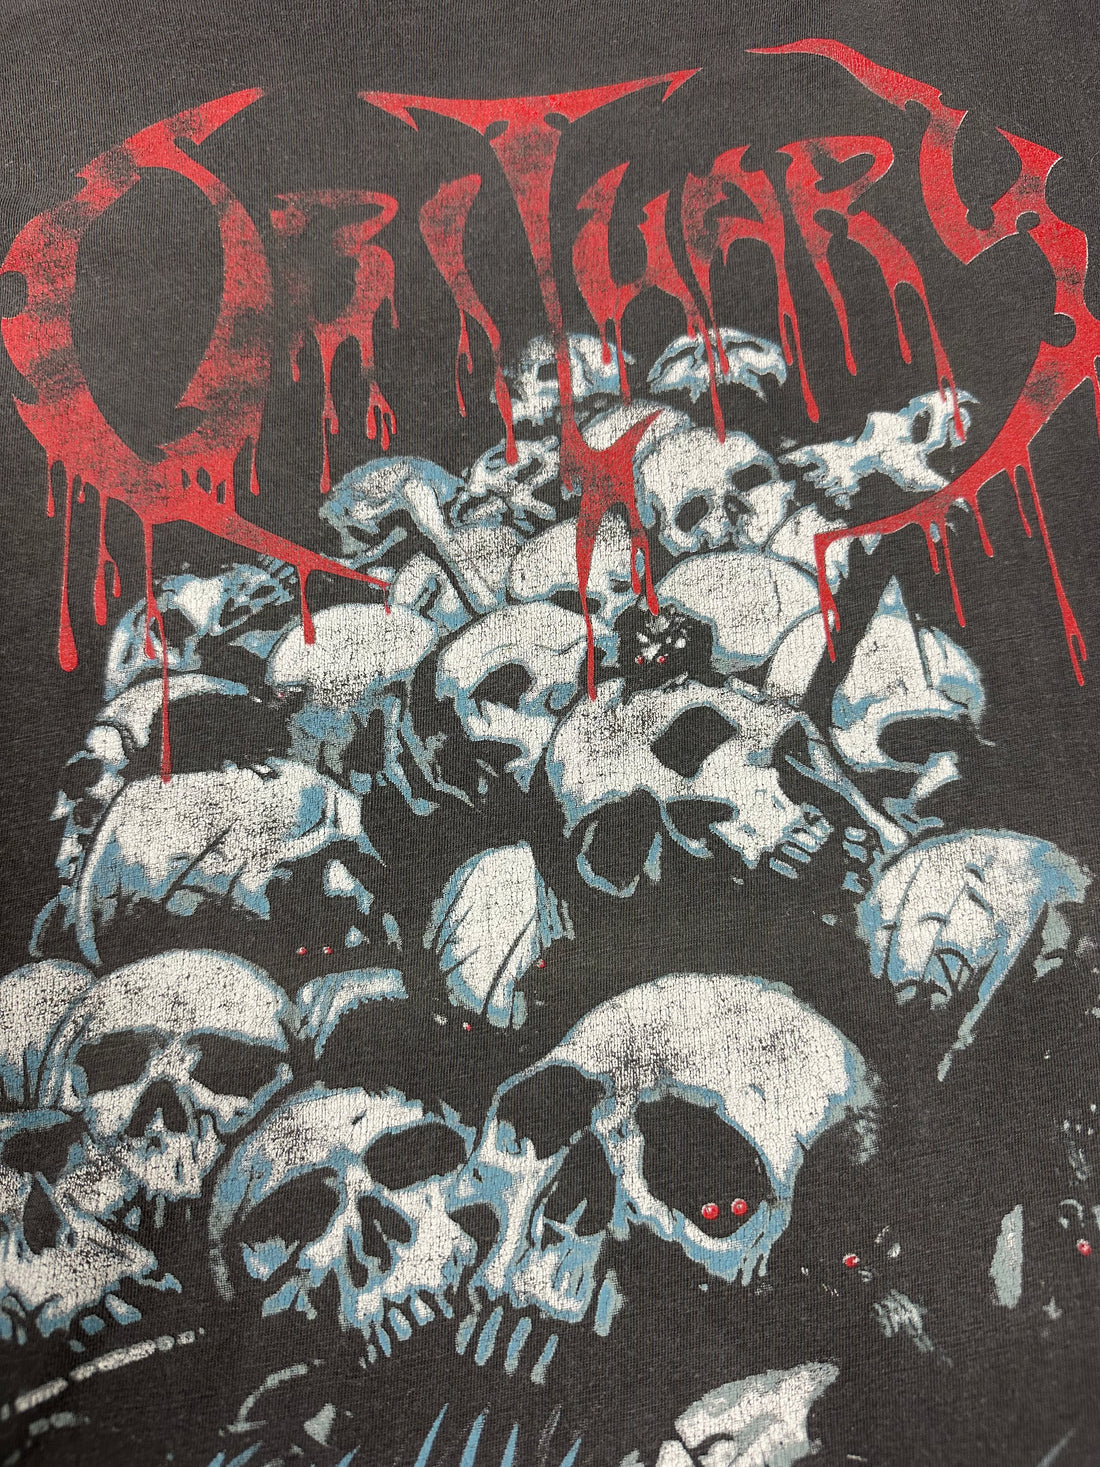 Obituary 1991 Pile of Skulls Vintage T-Shirt